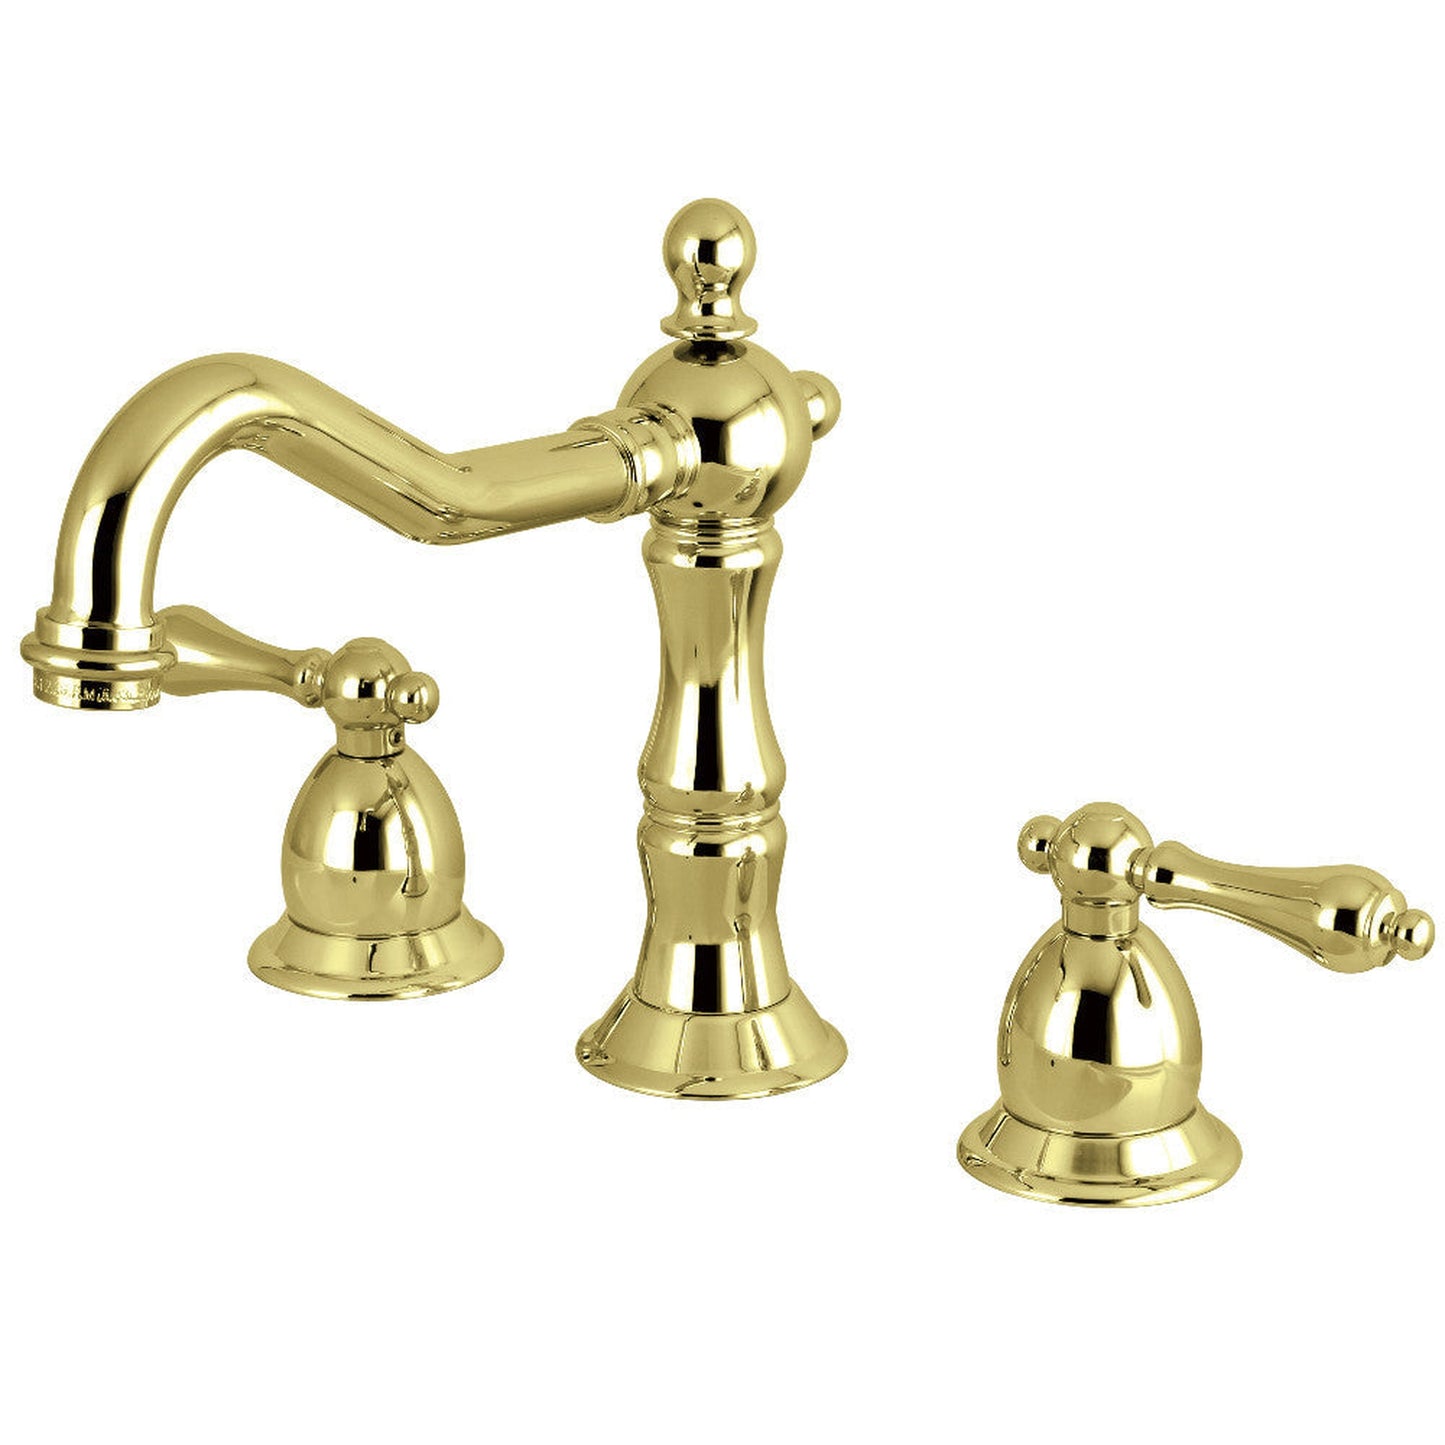 Kingston Brass KS1972AL 8 in. Widespread Bathroom Faucet, Polished Brass